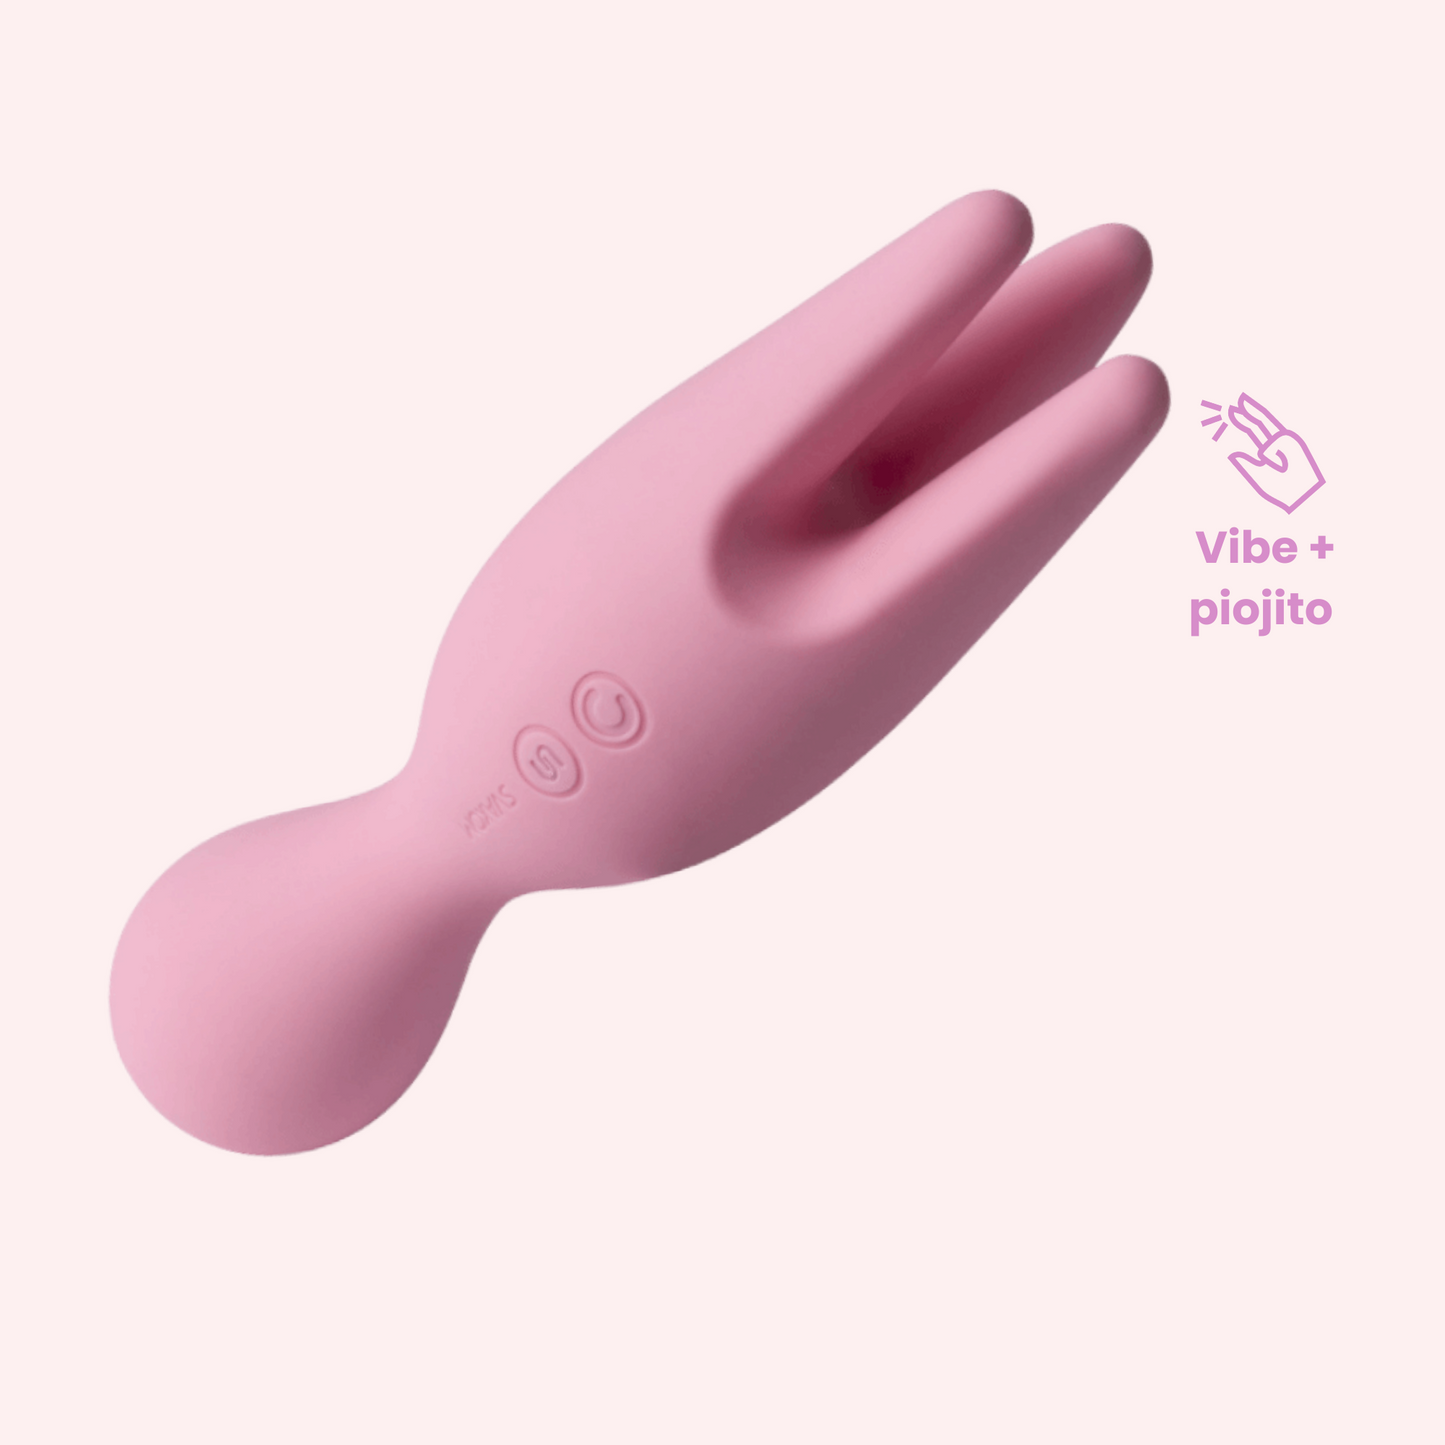 Vibrador vaginal y estimulador de clítoris